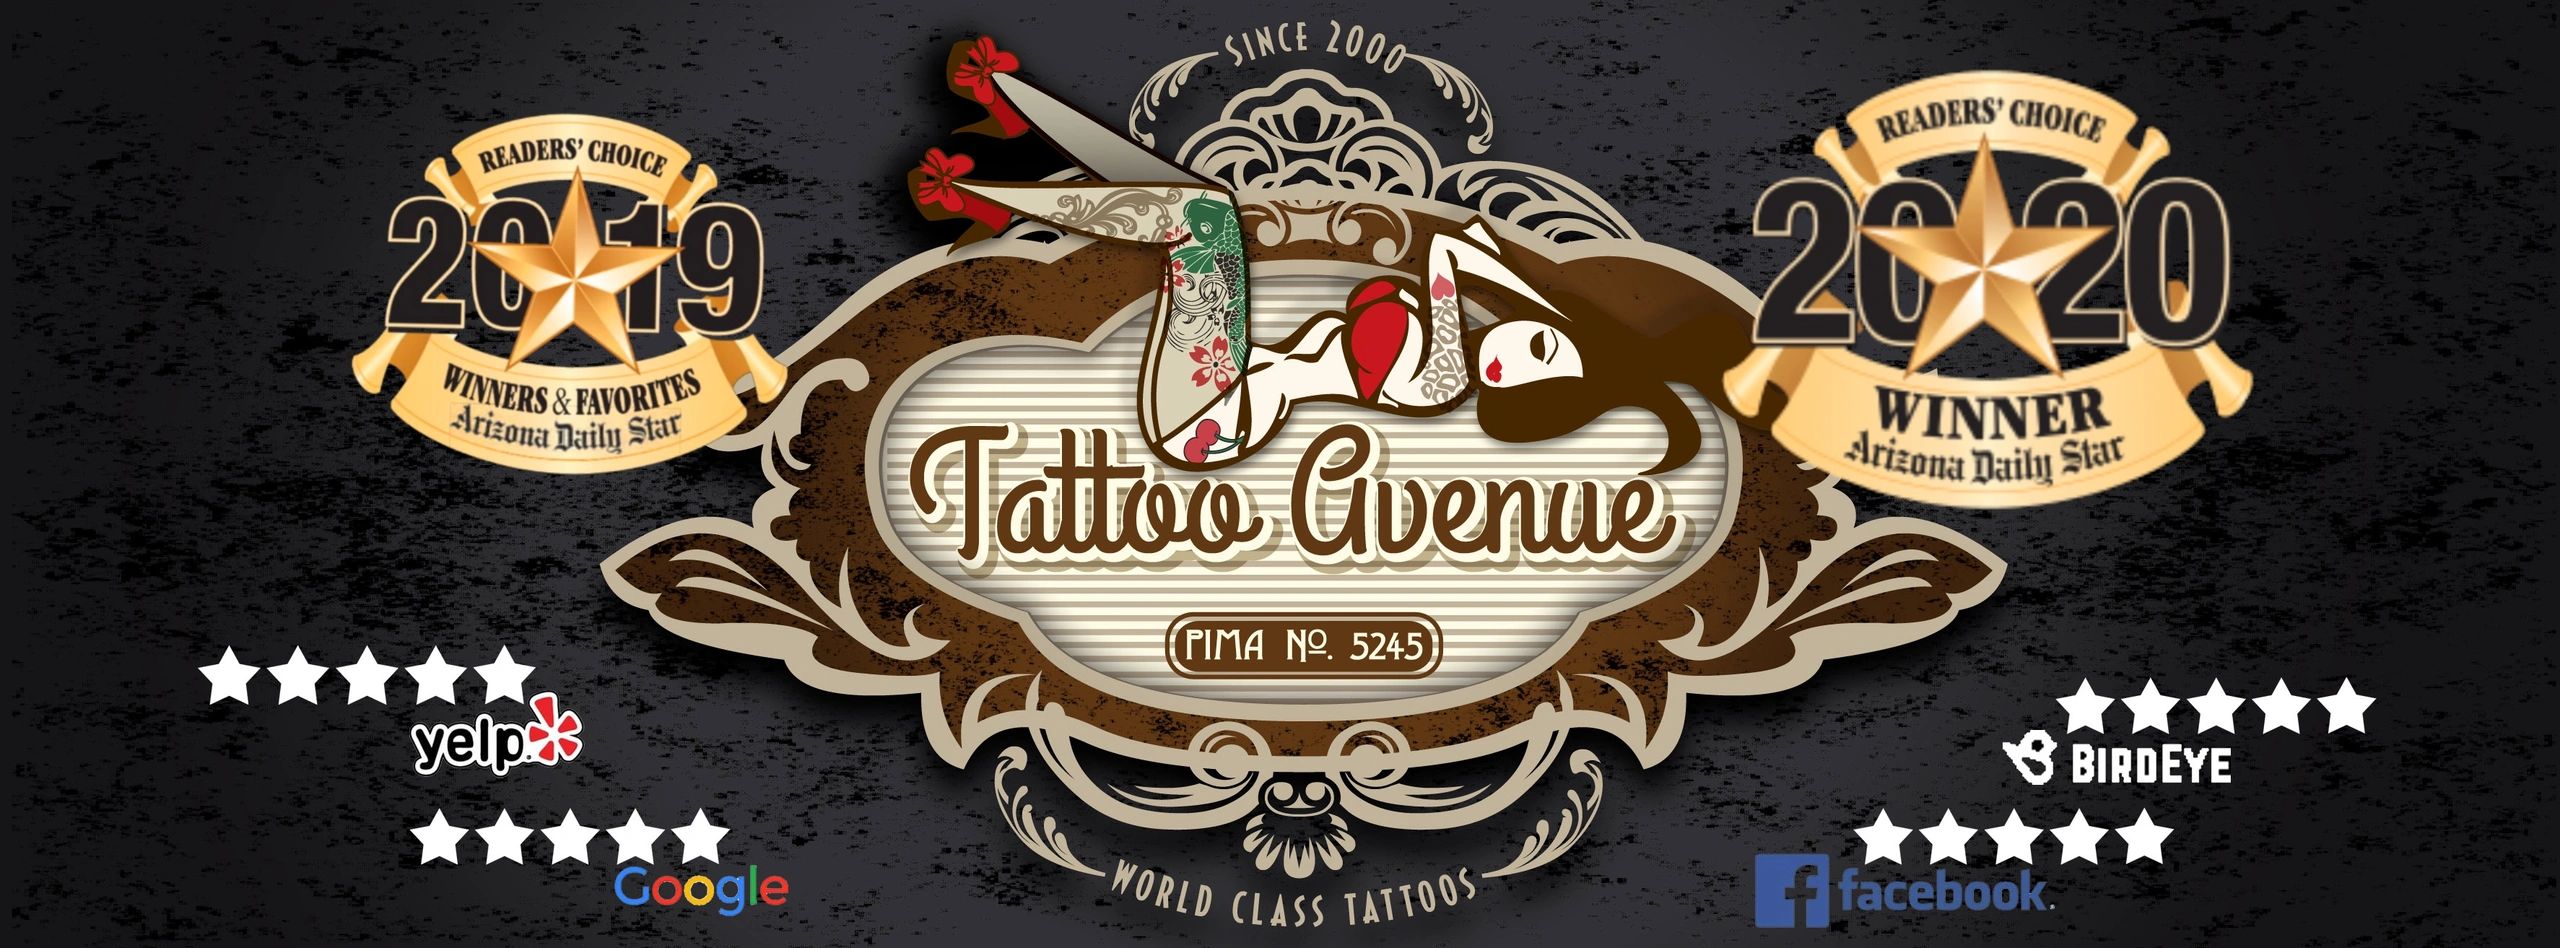 Tattoo Avenue Tucson - Tattoo, Piercing, Tattoo Shops | Tattoo Avenue